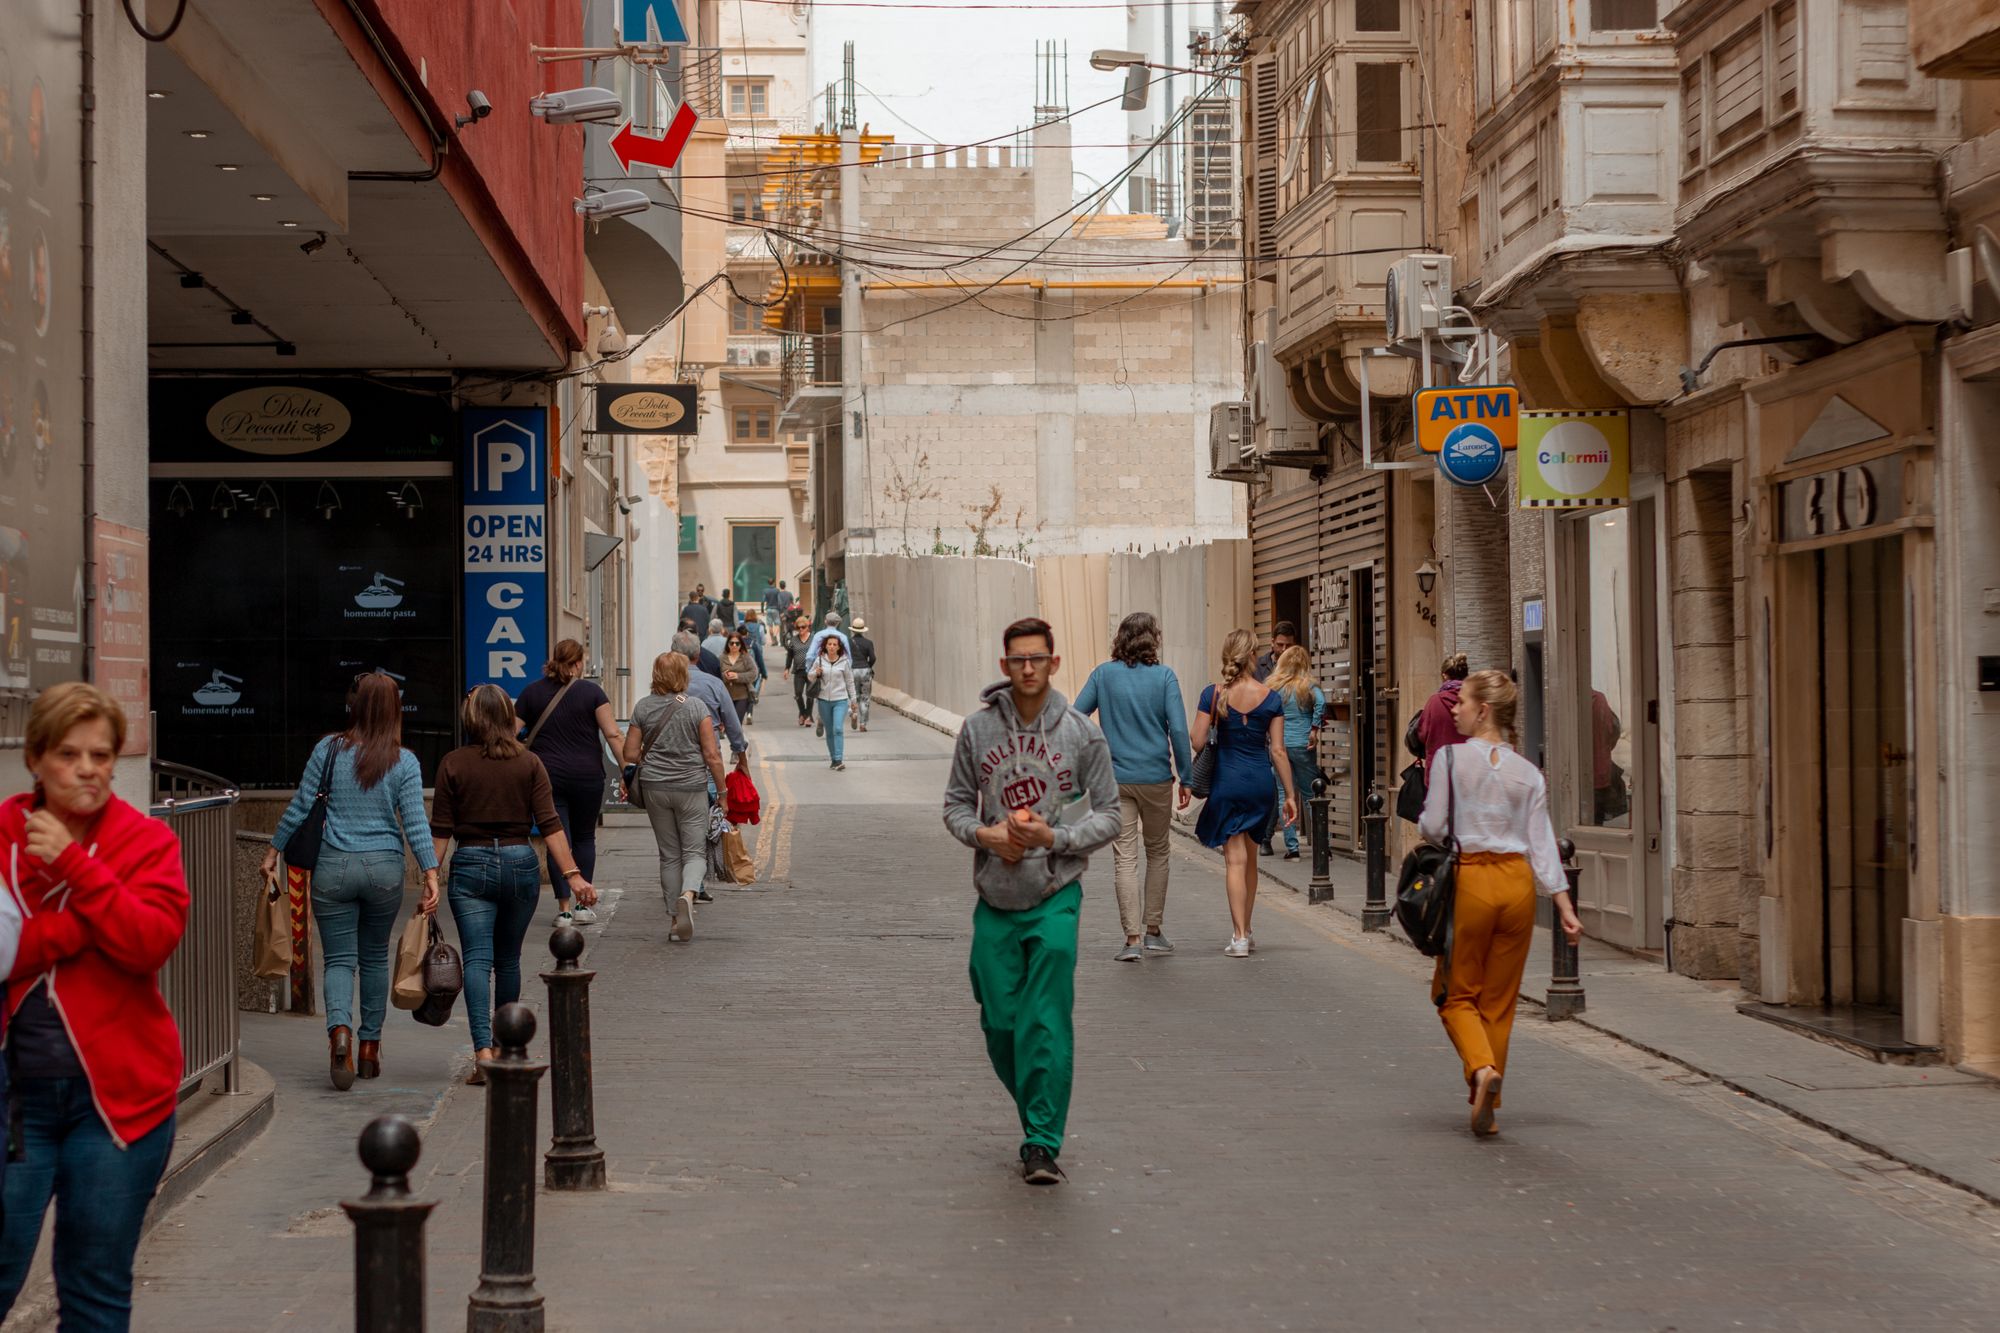 People walking in Malta: A photo by David Elikwu